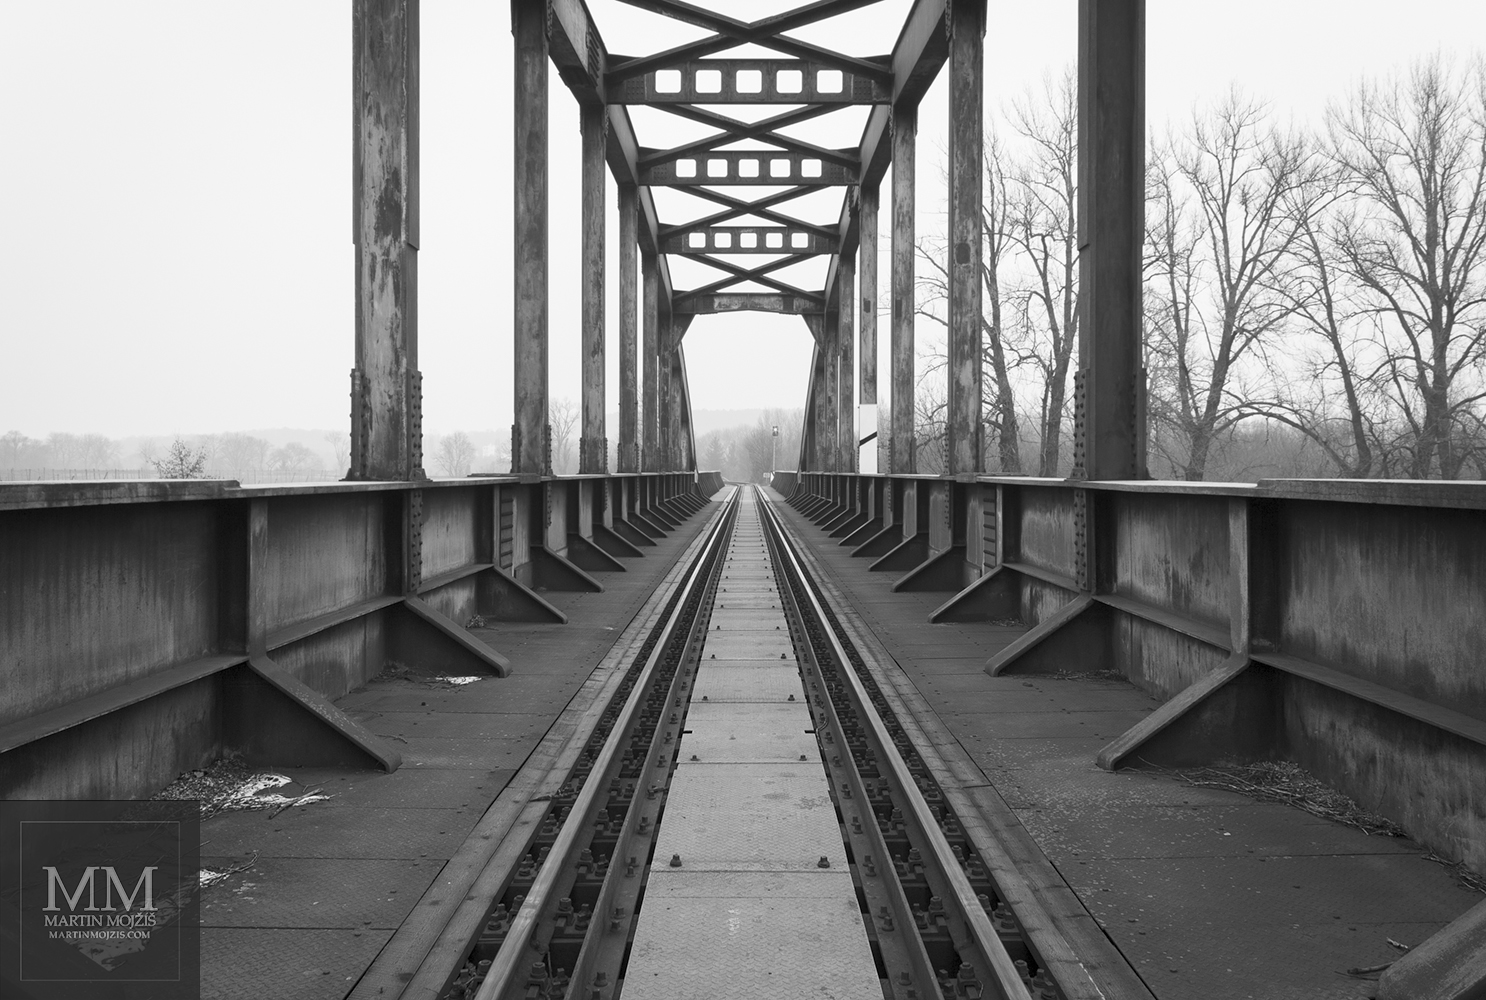 Ocelový železniční most přes řeku. Umělecká černobílá fotografie Martina Mojžíše s názvem NENÍ TO DALEKO.